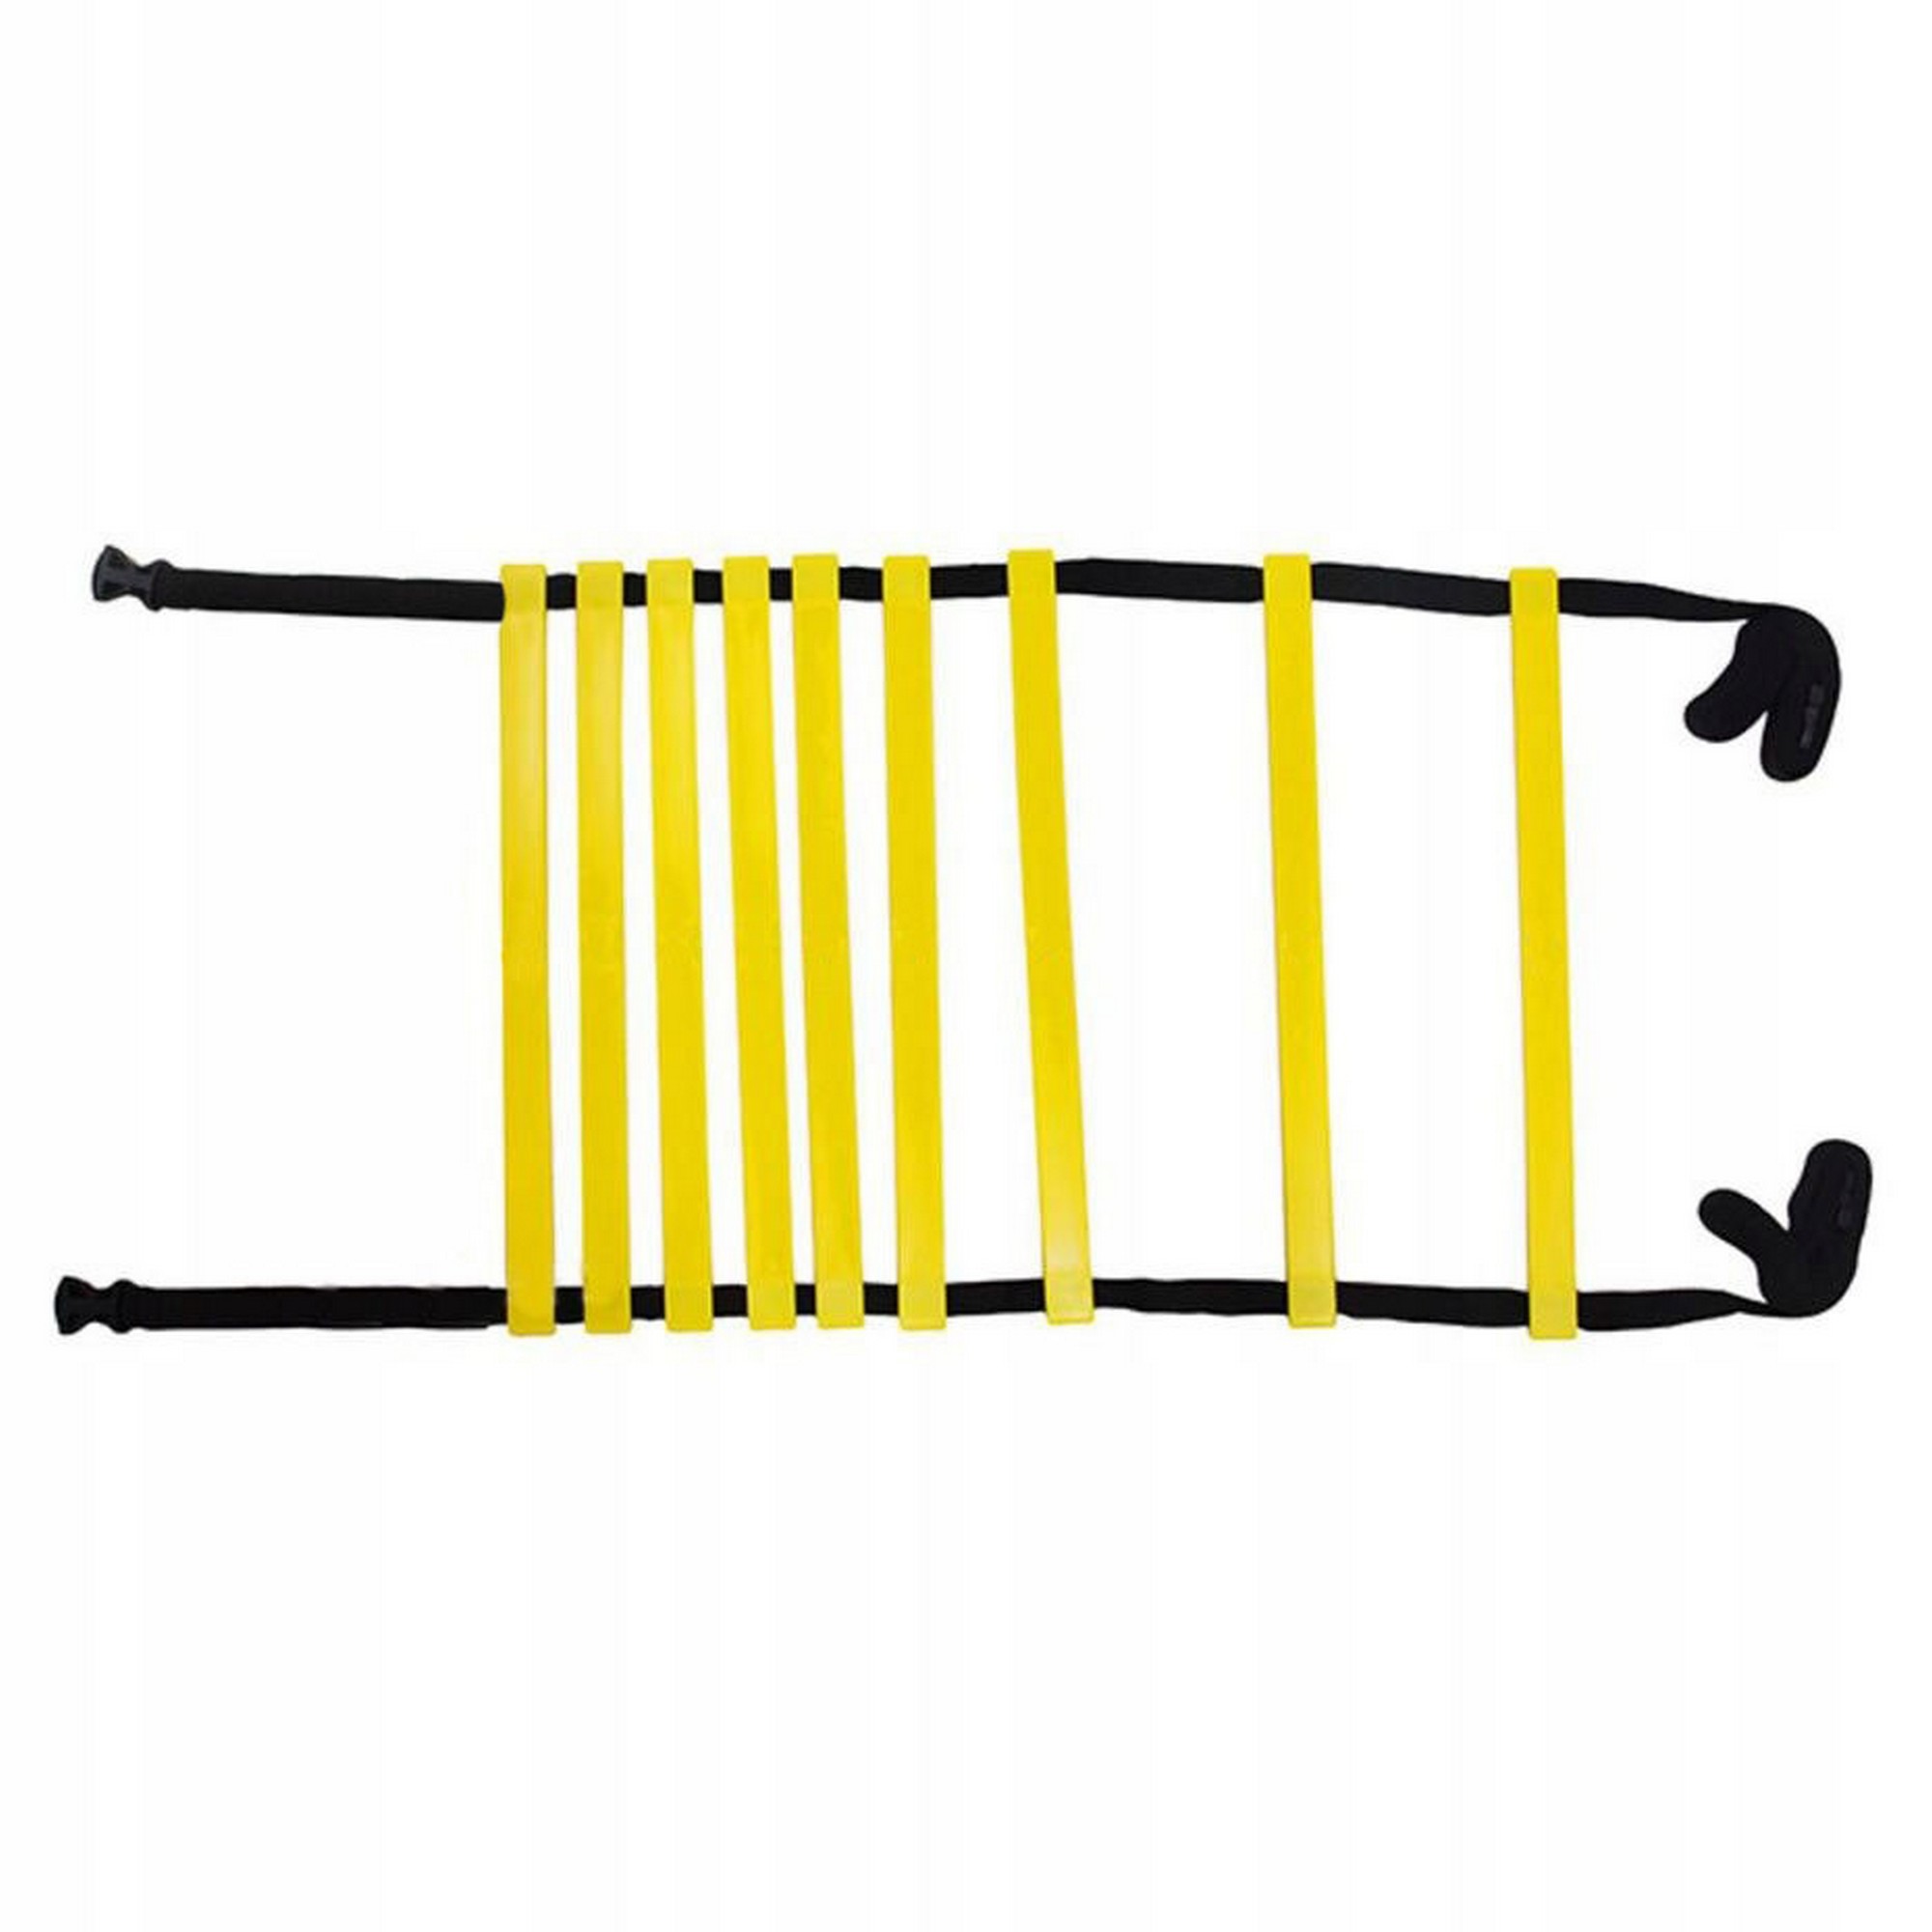 Лестница для тренировок ЛК-4 желто-черный, NoBrand  - купить со скидкой